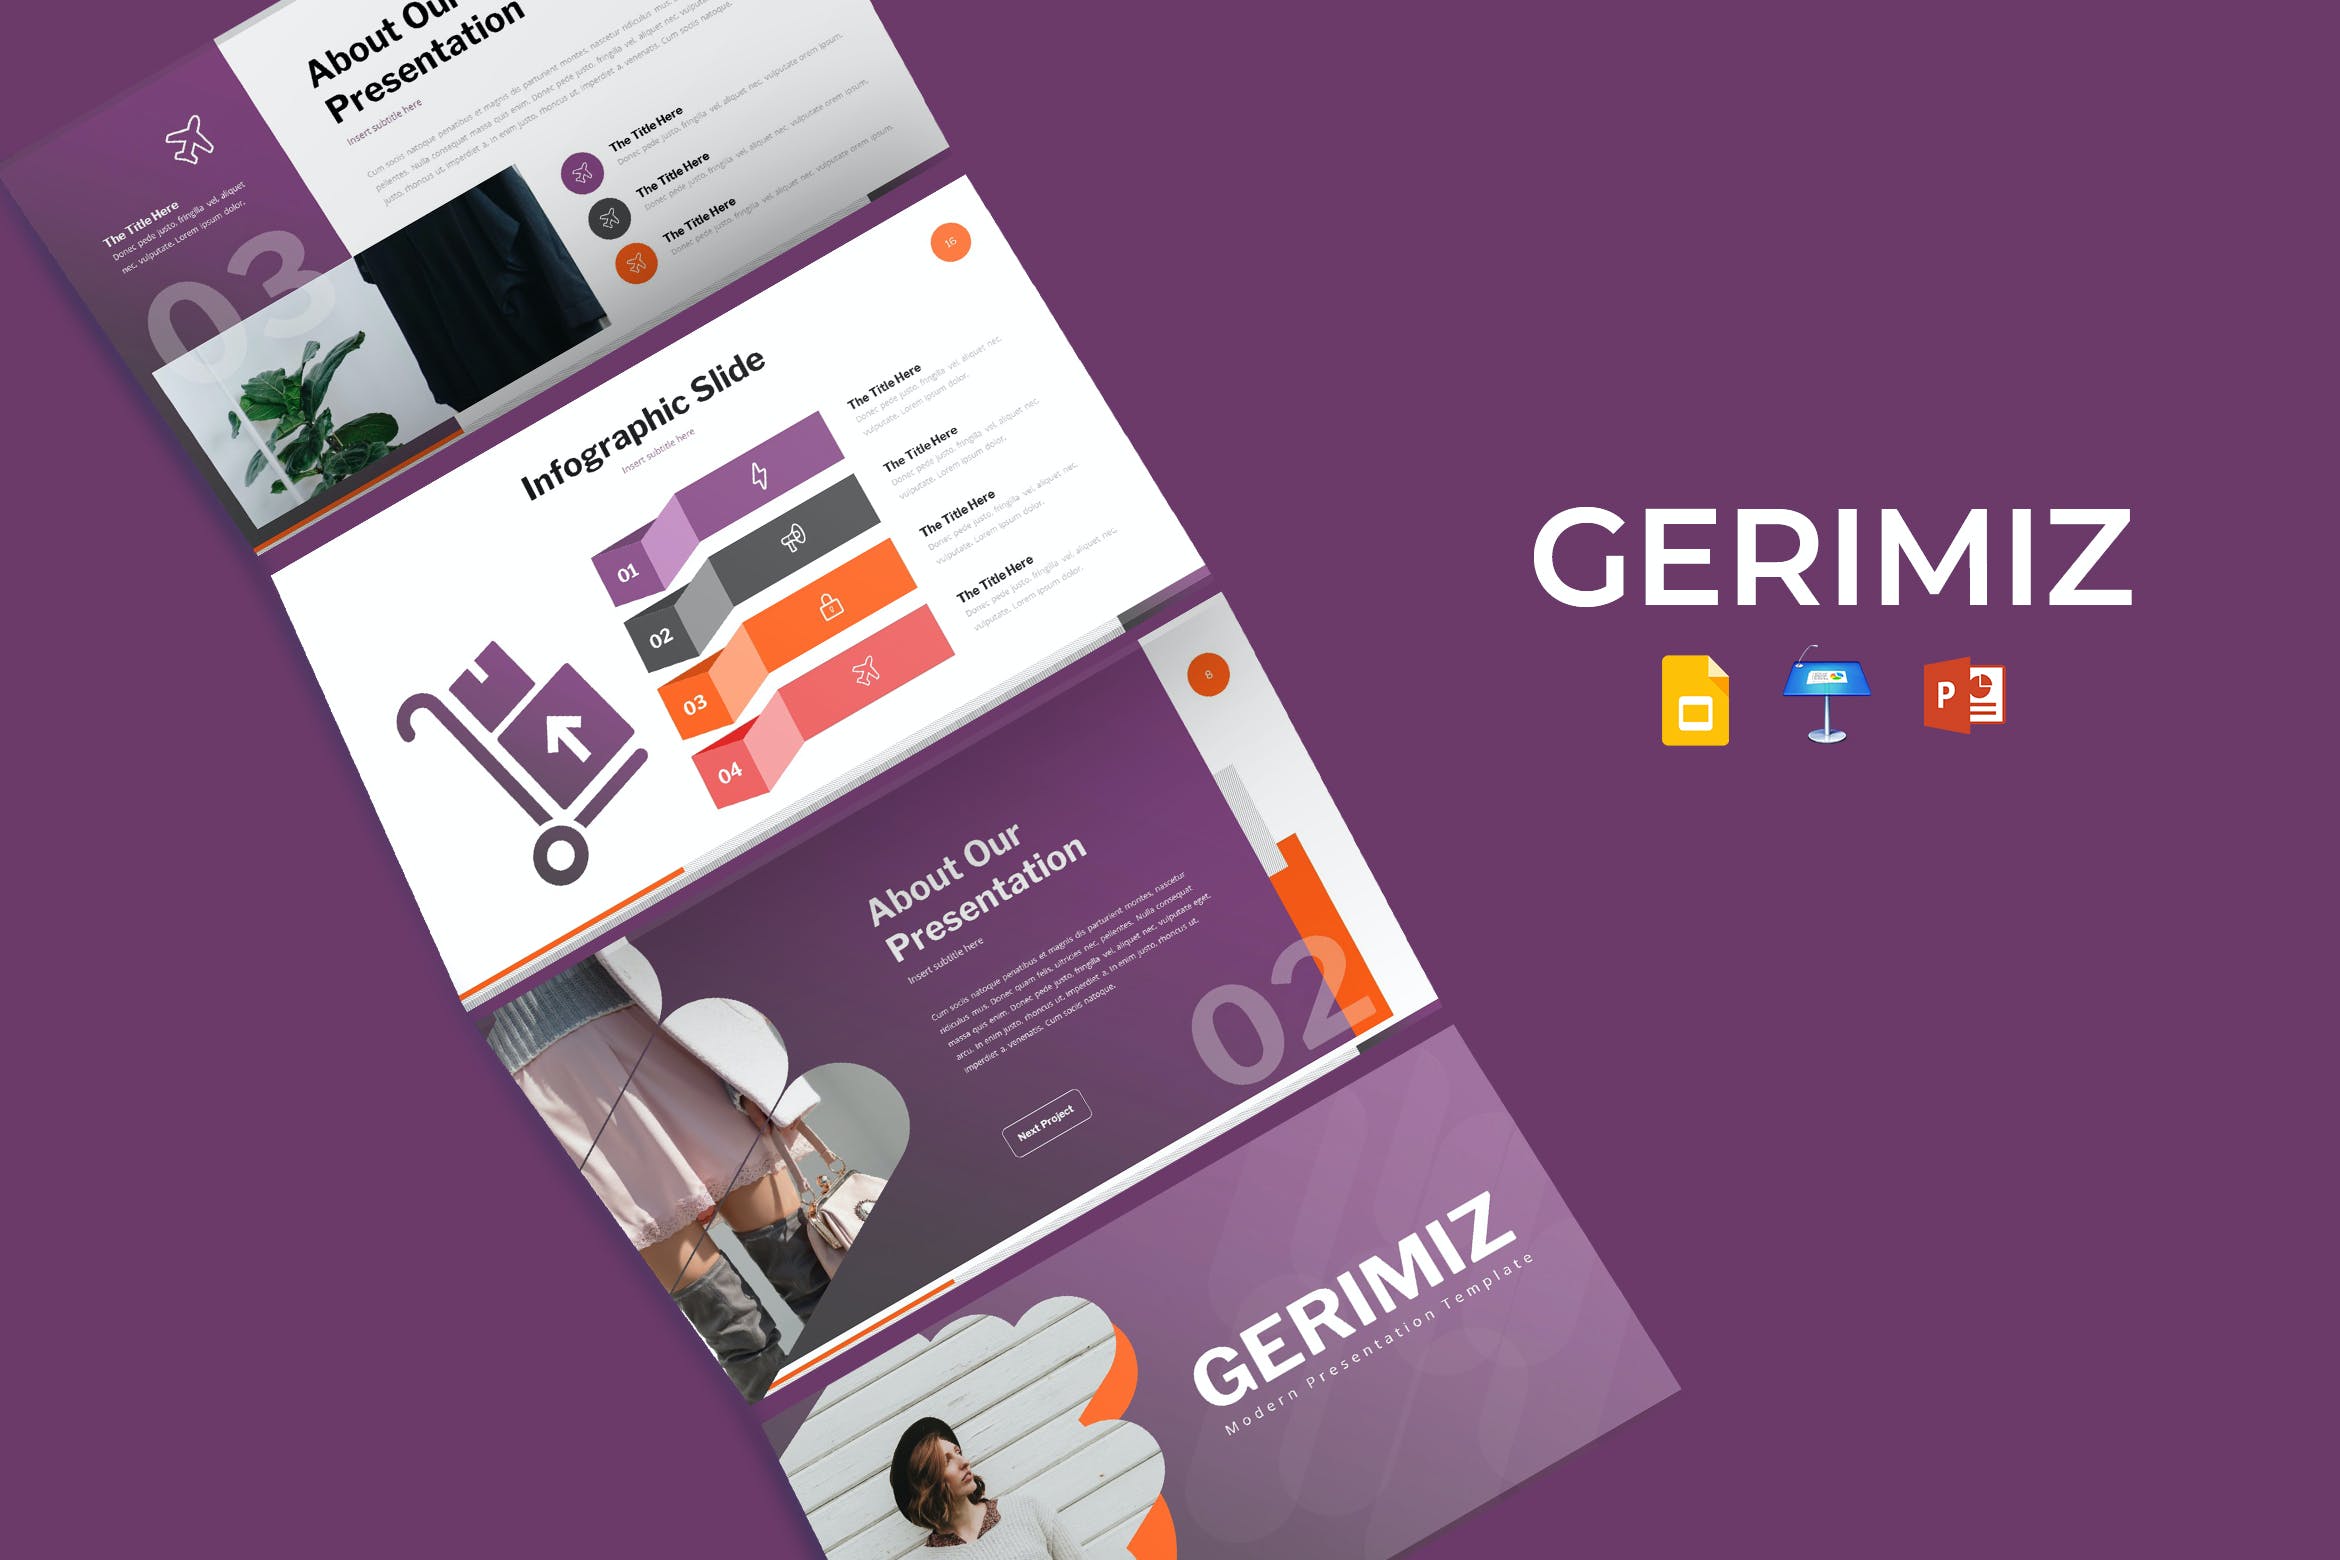 企业需求&满足个人的幻灯片演示PPT模板 Gerimiz – Presentation Template设计素材模板